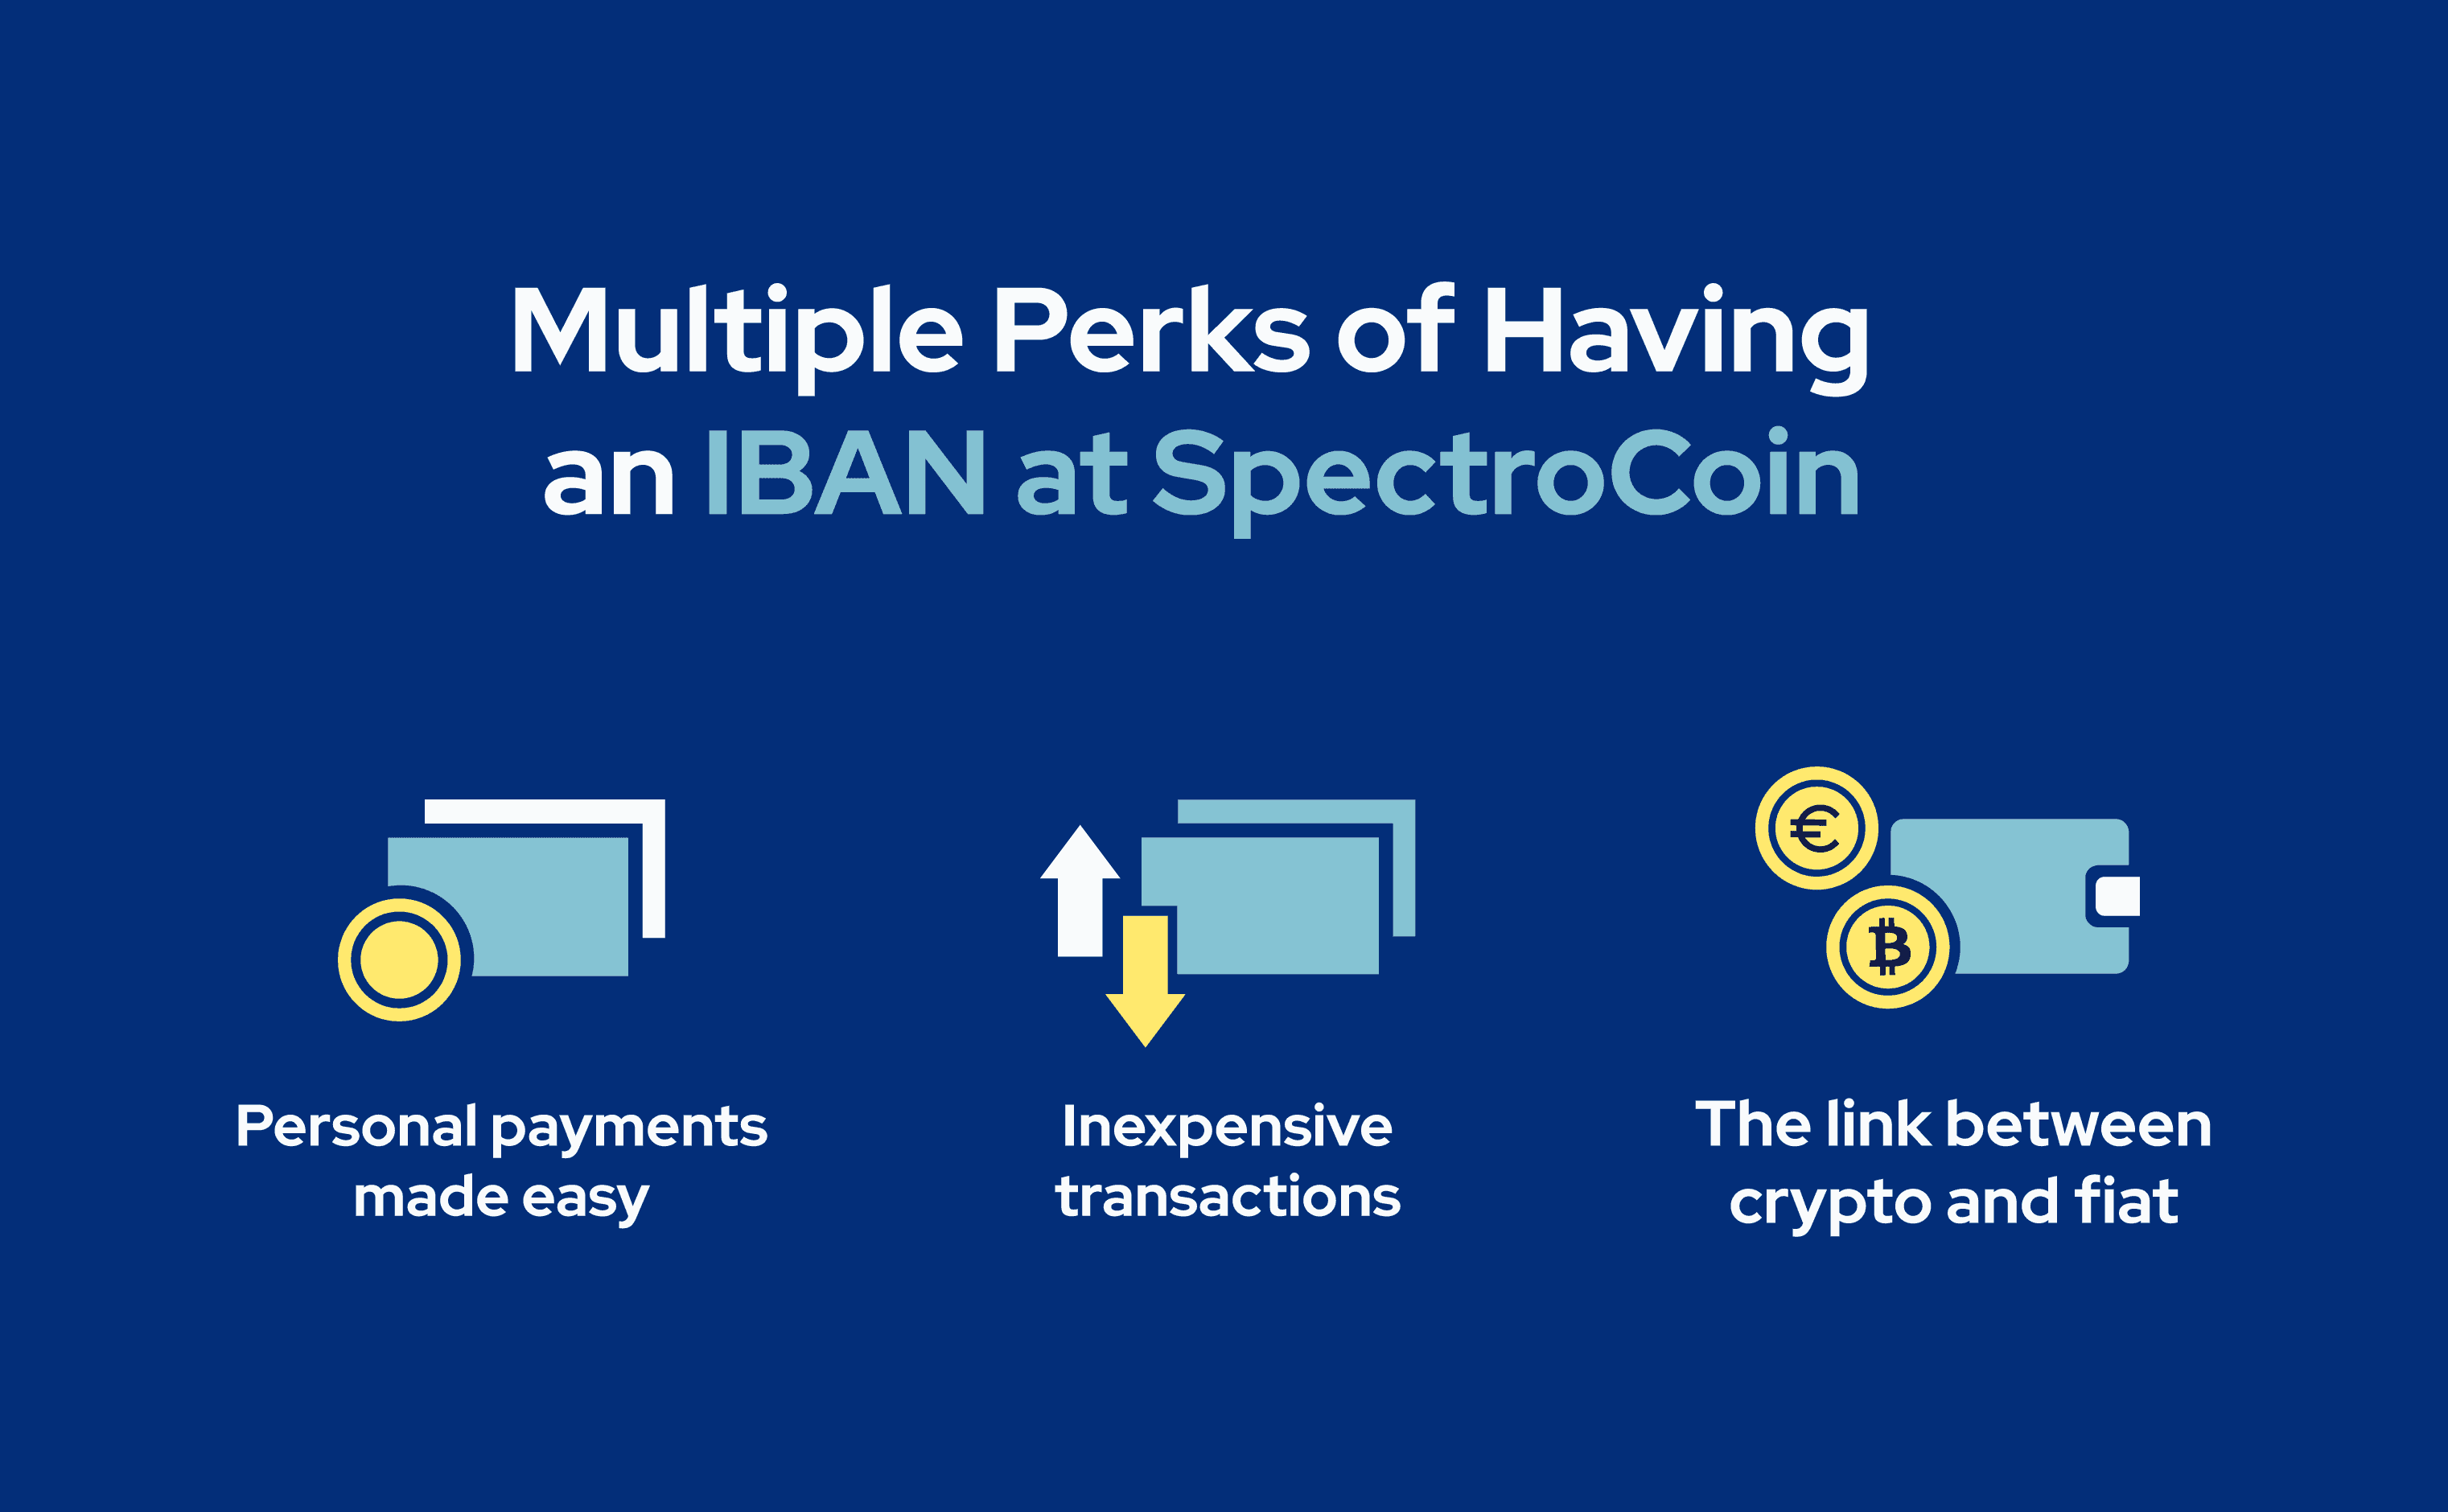 Šiame paveikslėlyje paaiškinti pagrindiniai IBAN „SpectroCoin“ privalumai.